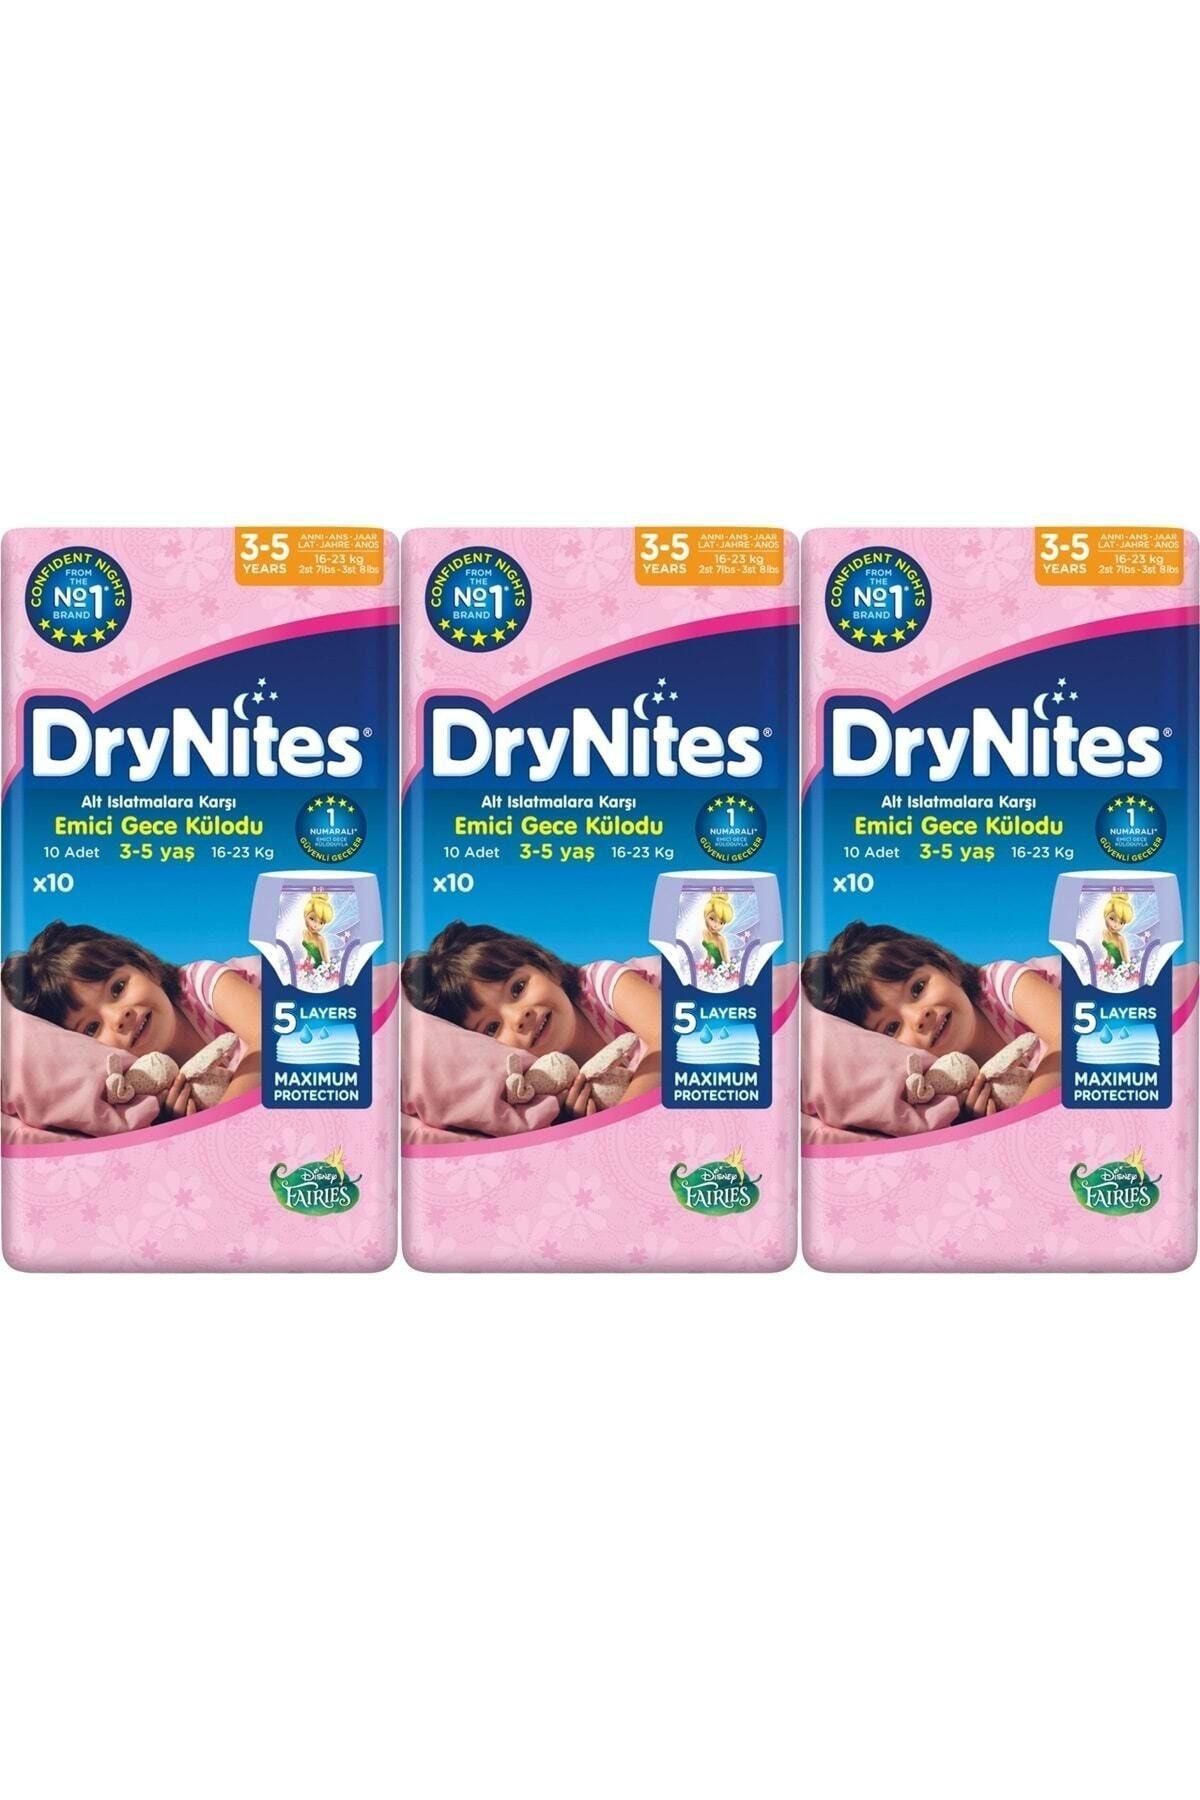 DryNites Emici Külot Kız 3-5 Yaş (16-23kg) 30 Adet Ekonomik Pk (3 Lü Set)